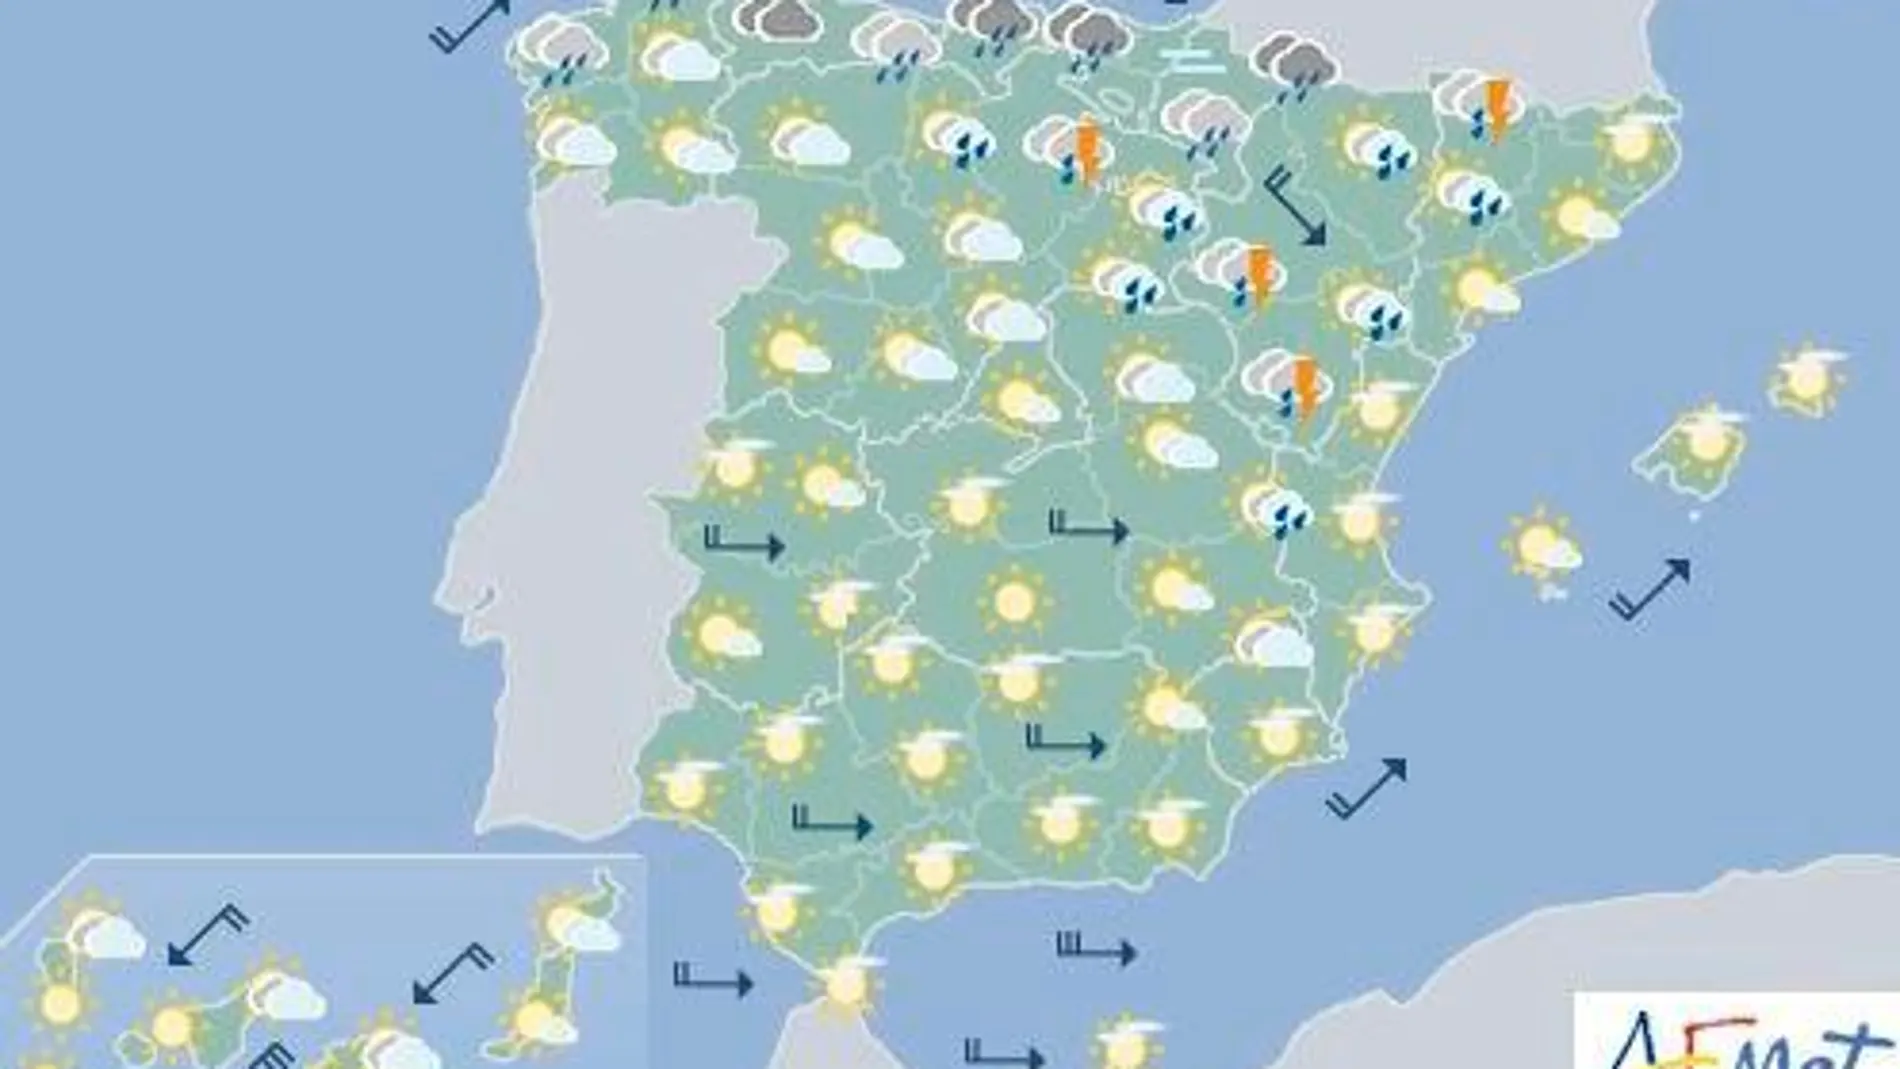 Fin de semana con importante bajada de temperaturas, hasta 10 grados, en toda España